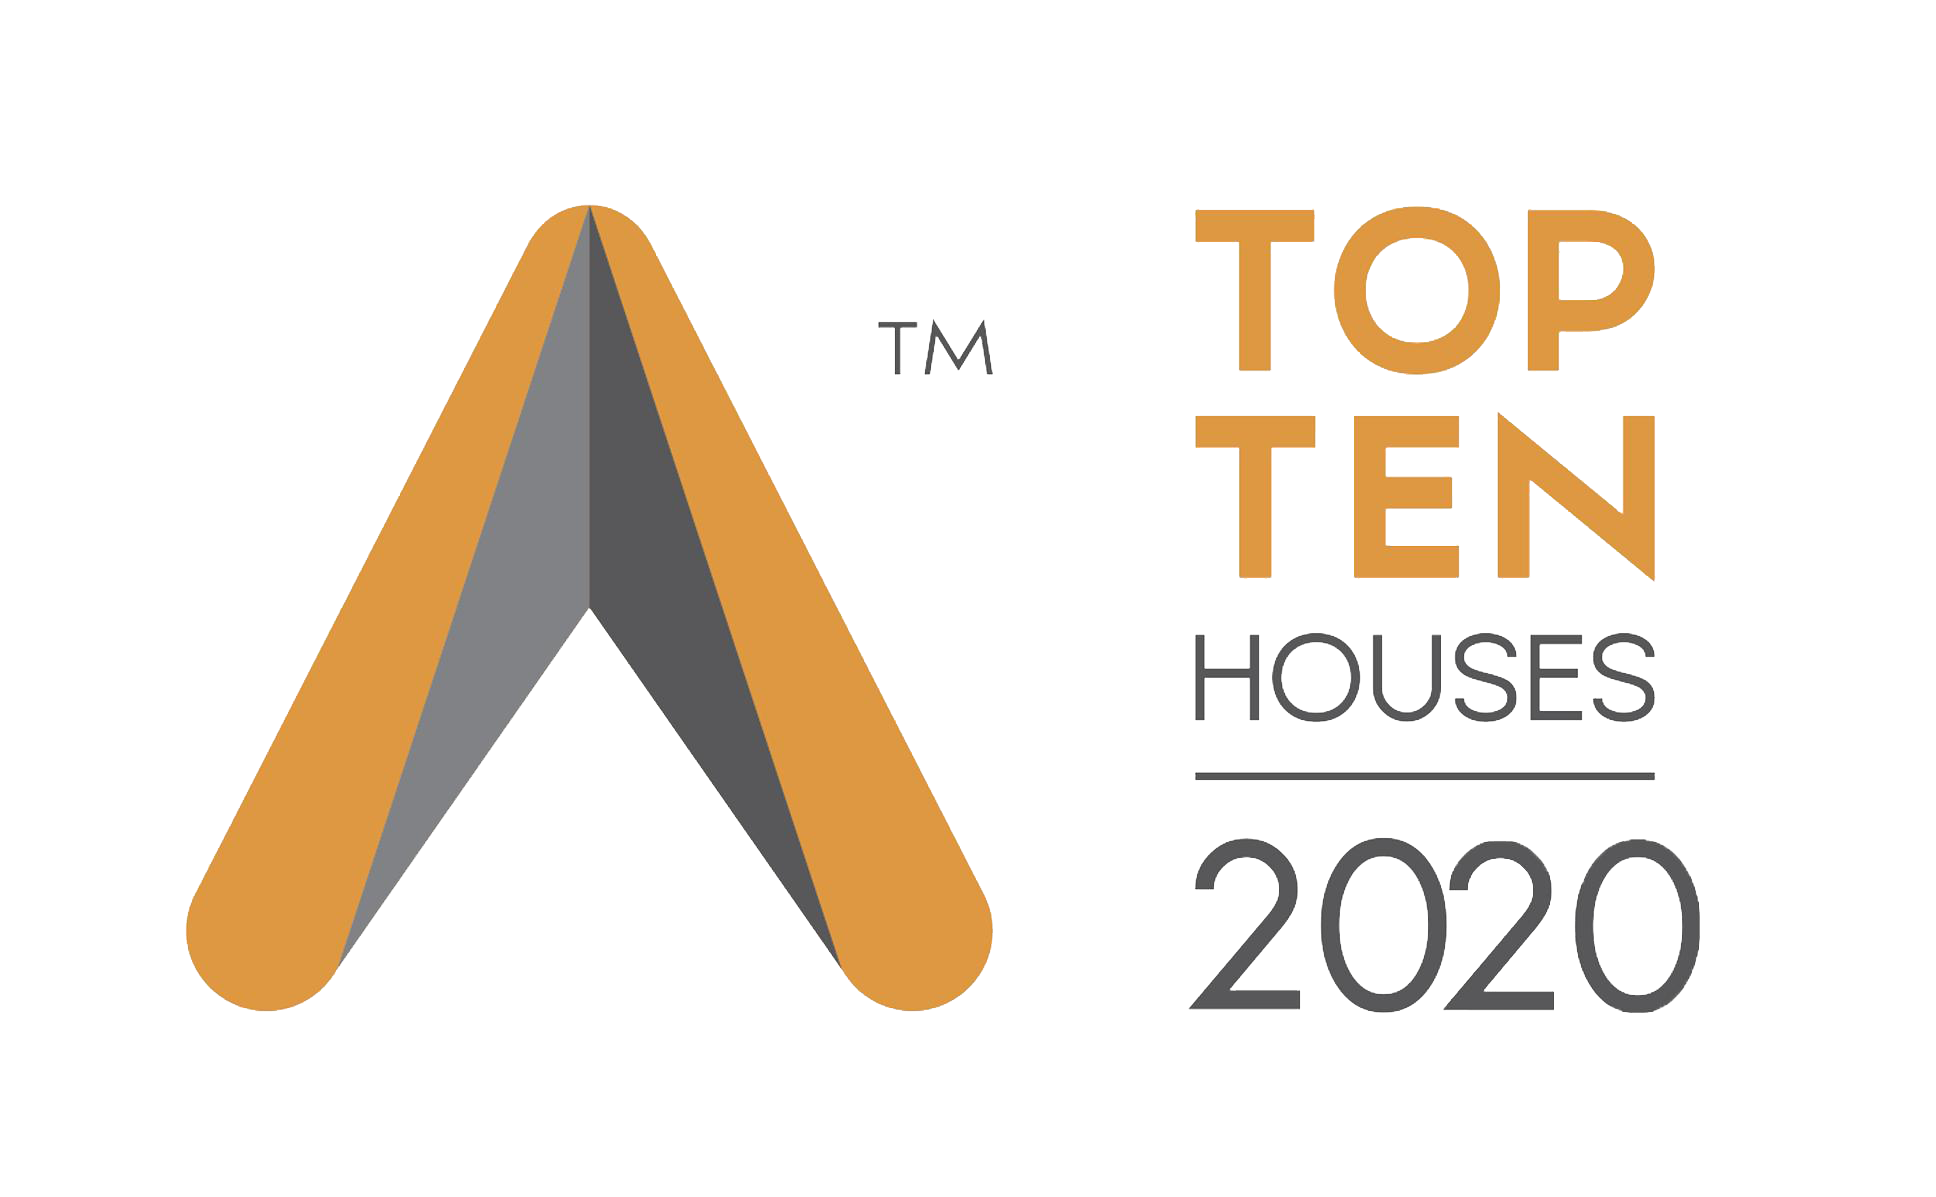 You are currently viewing Top 10 Houses Awards 2020 – Tiếp tục hành trình tìm kiếm xu hướng kiến trúc nhà ở Việt đương đại